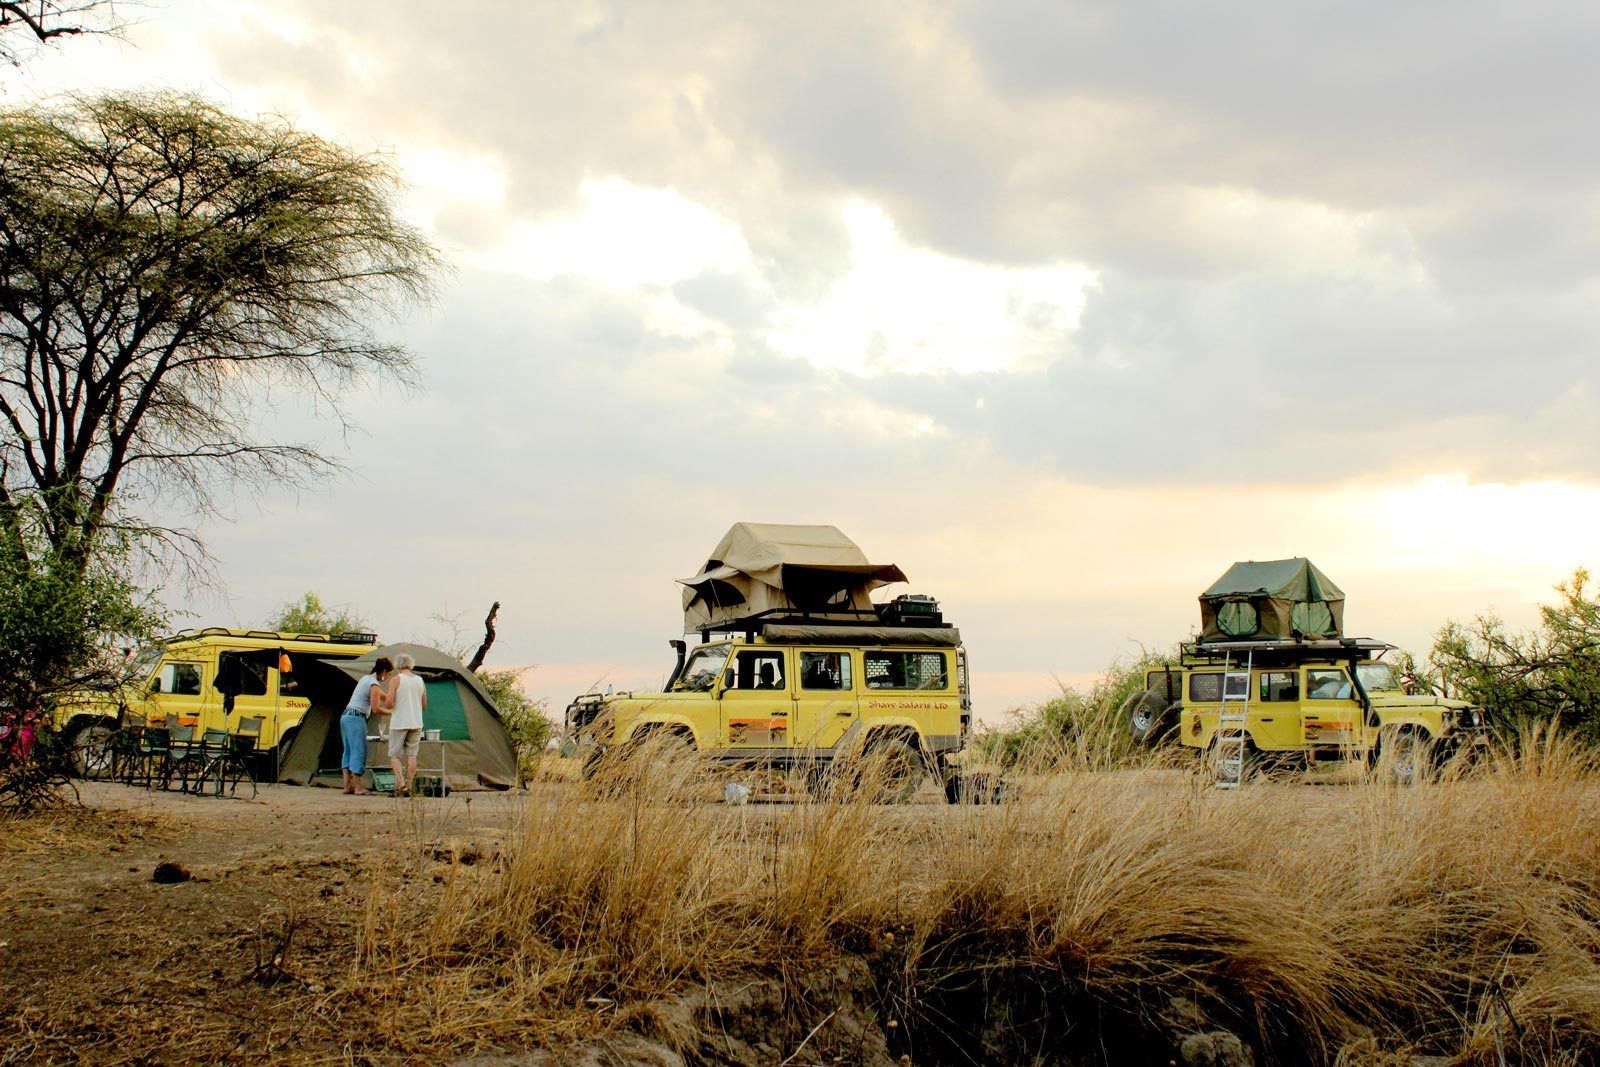 Archer & Gaher Adventures - Self Drive Tanzania - Camping Safari Holidays